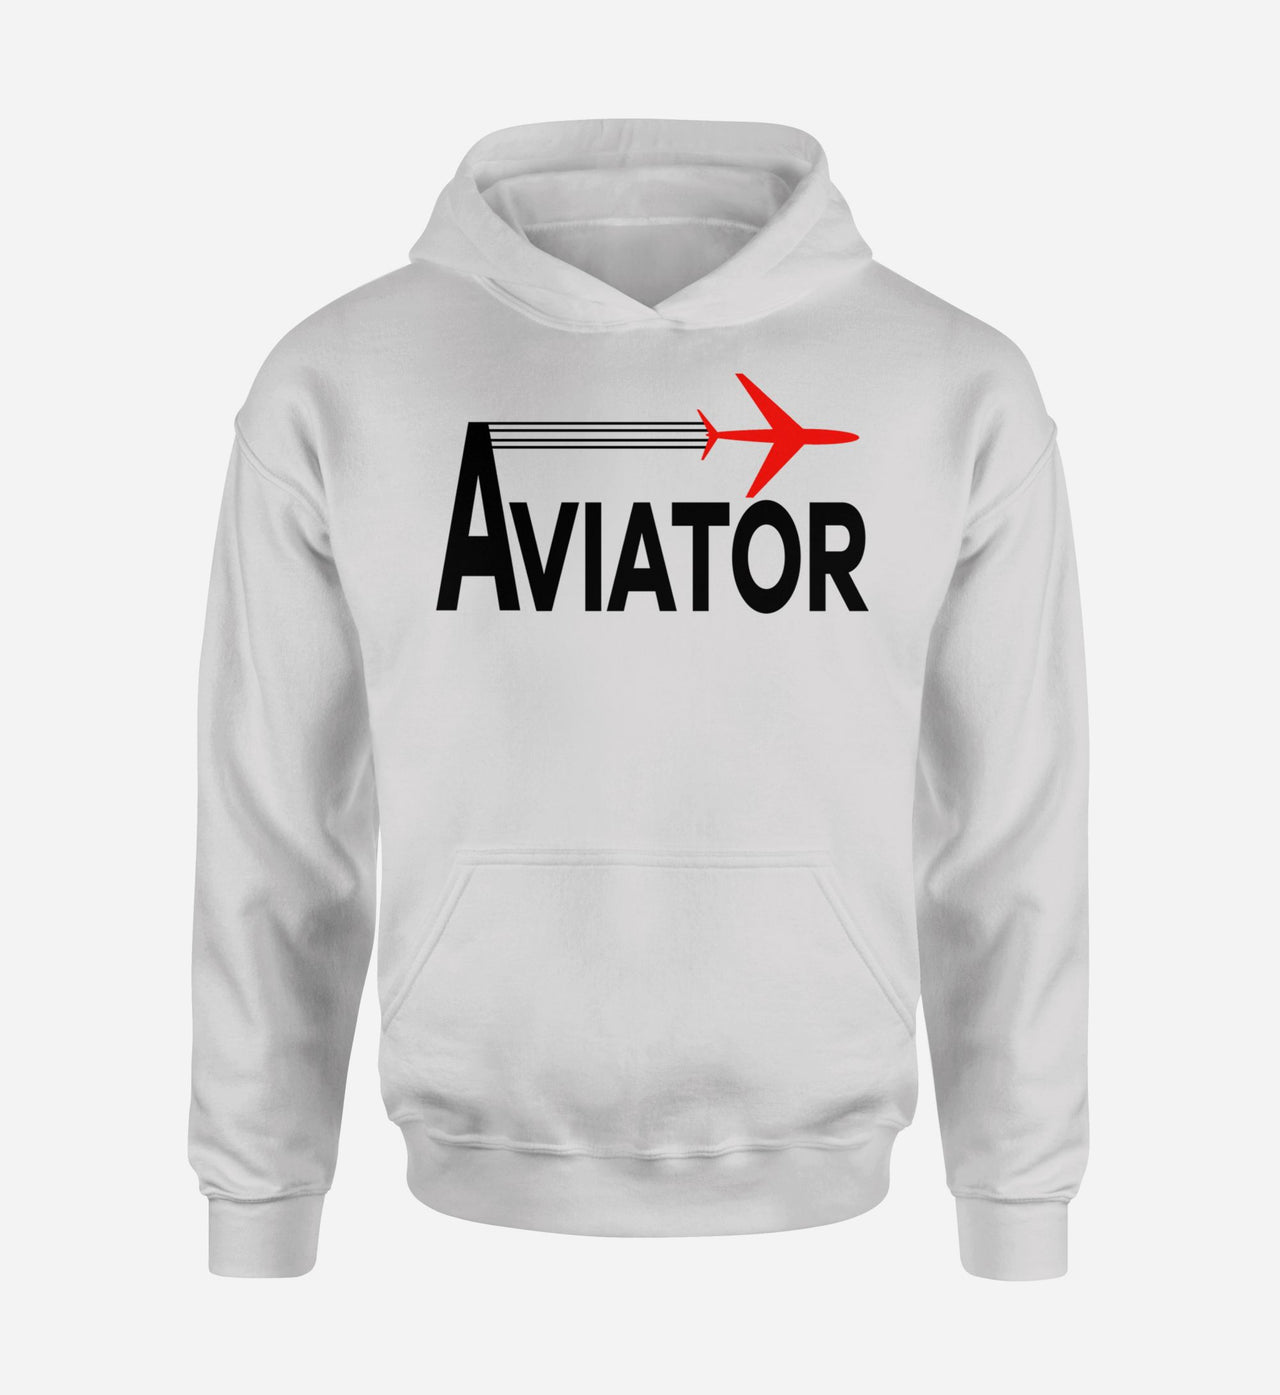 Aviator Designed Hoodies